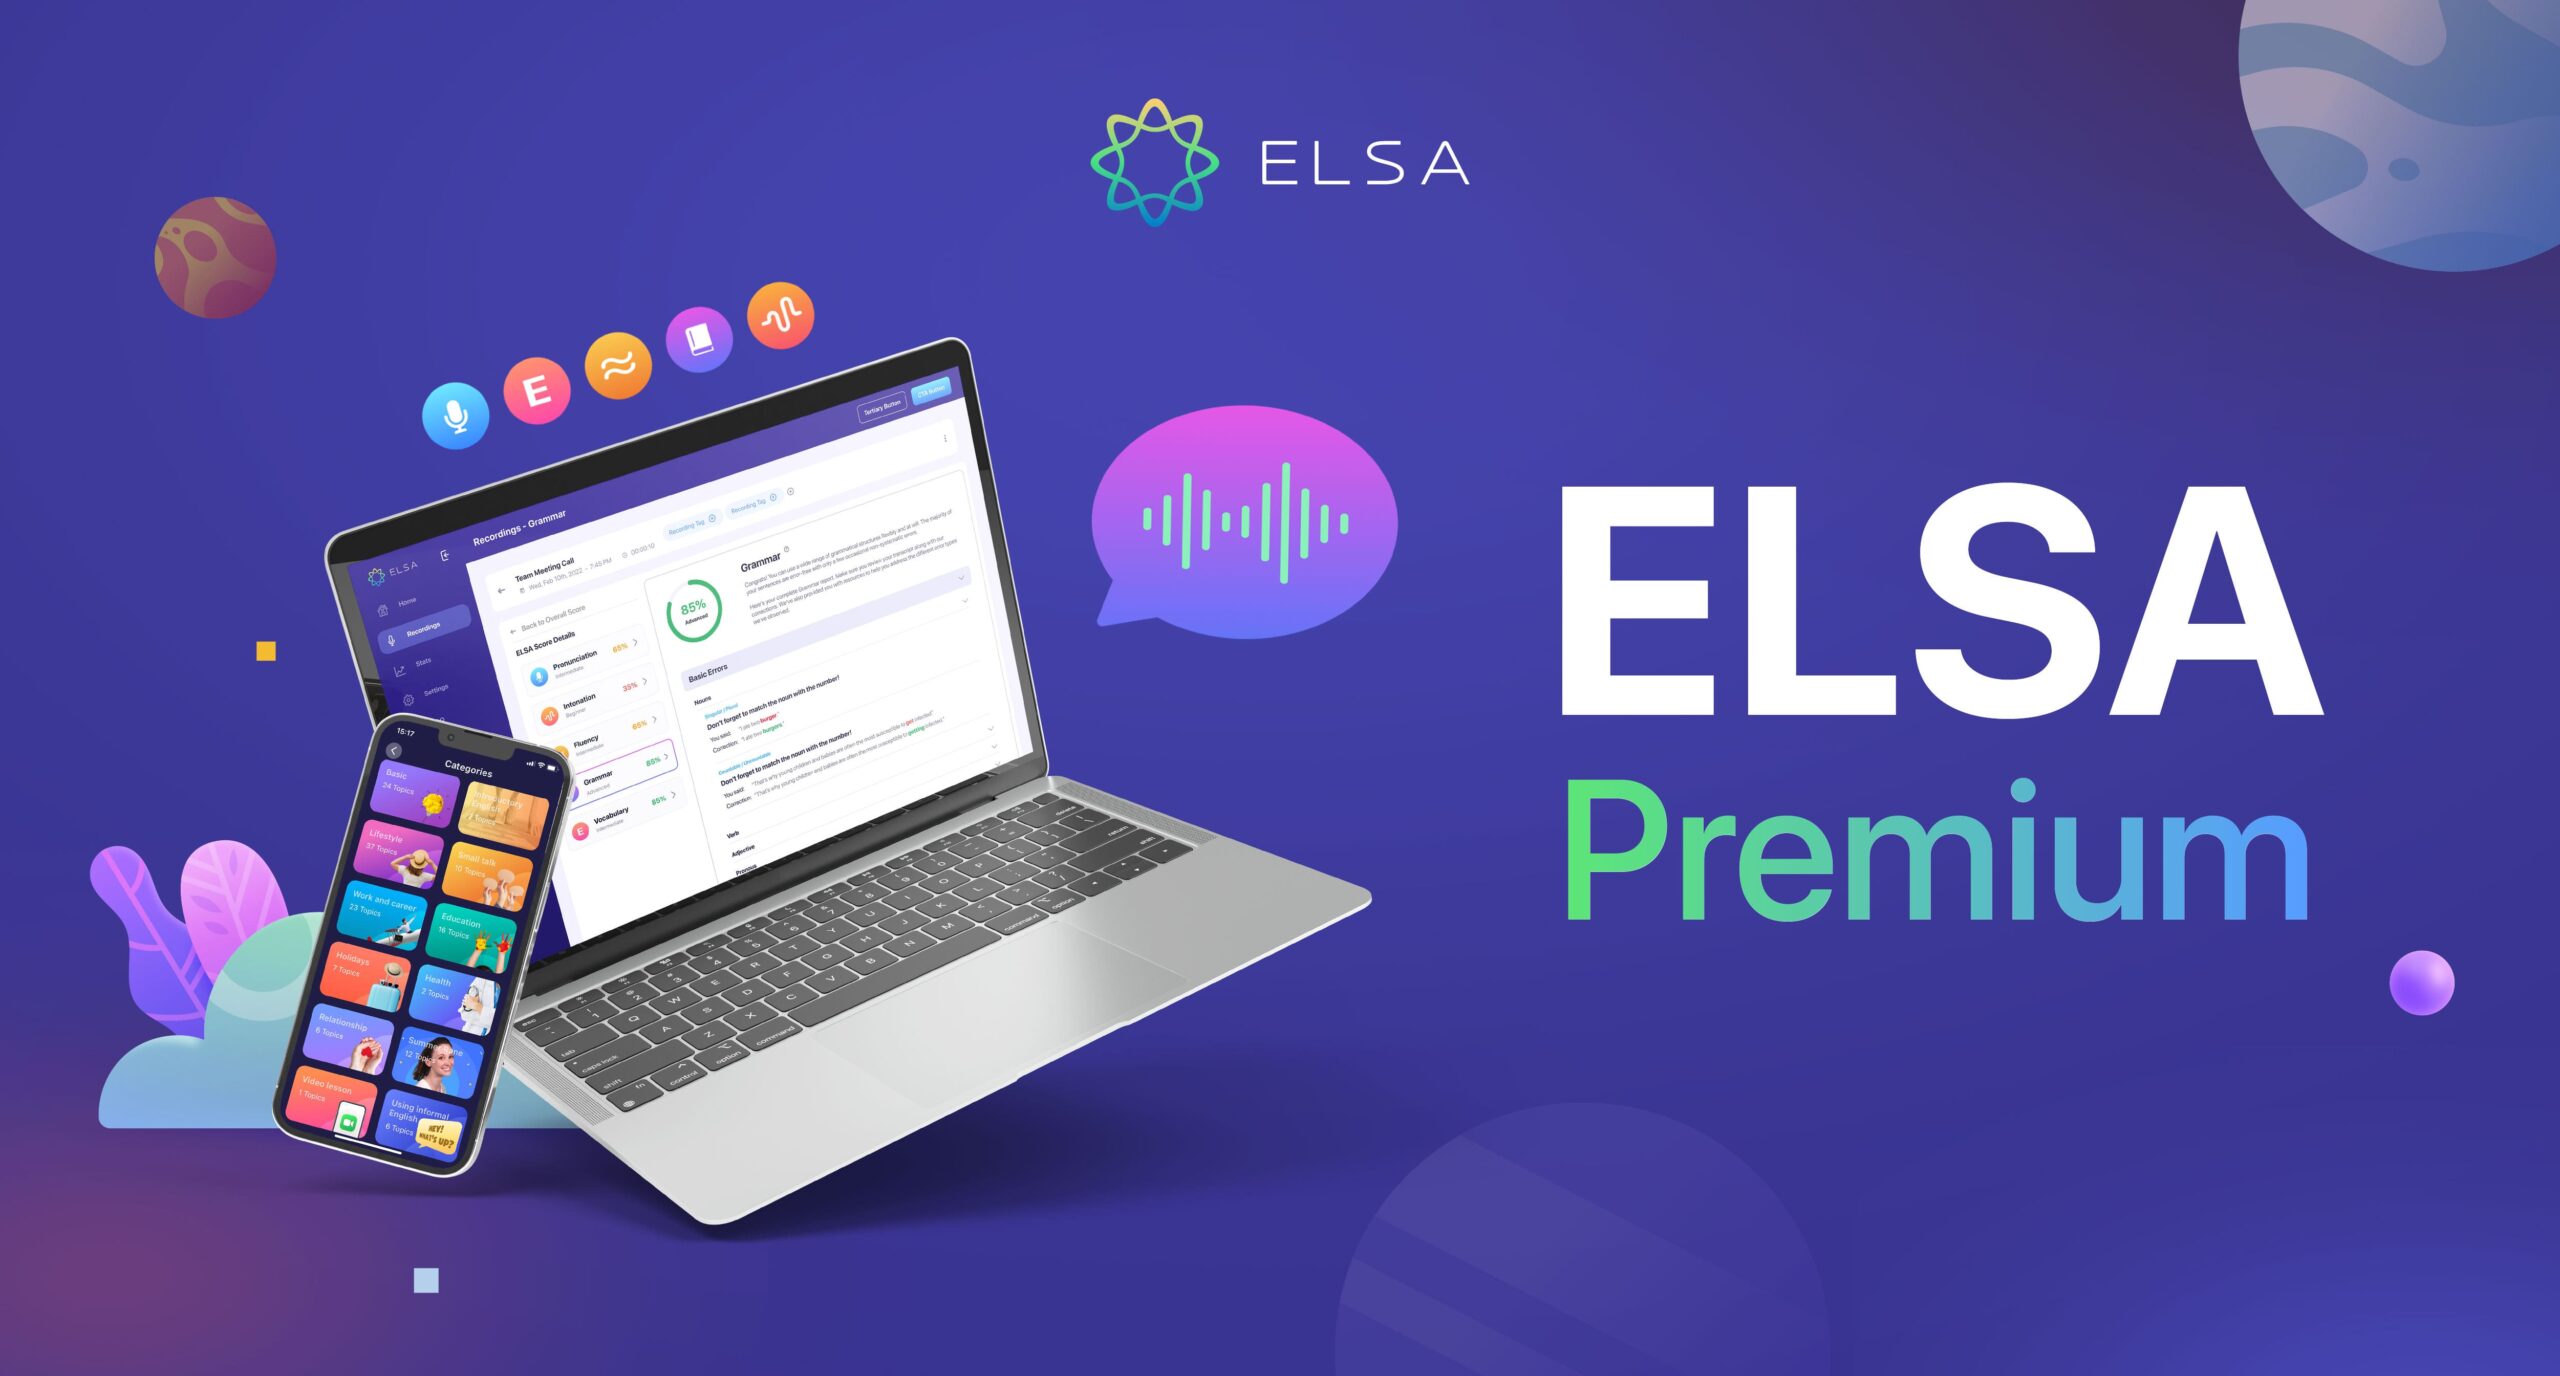 ELSA Premium 使用說明